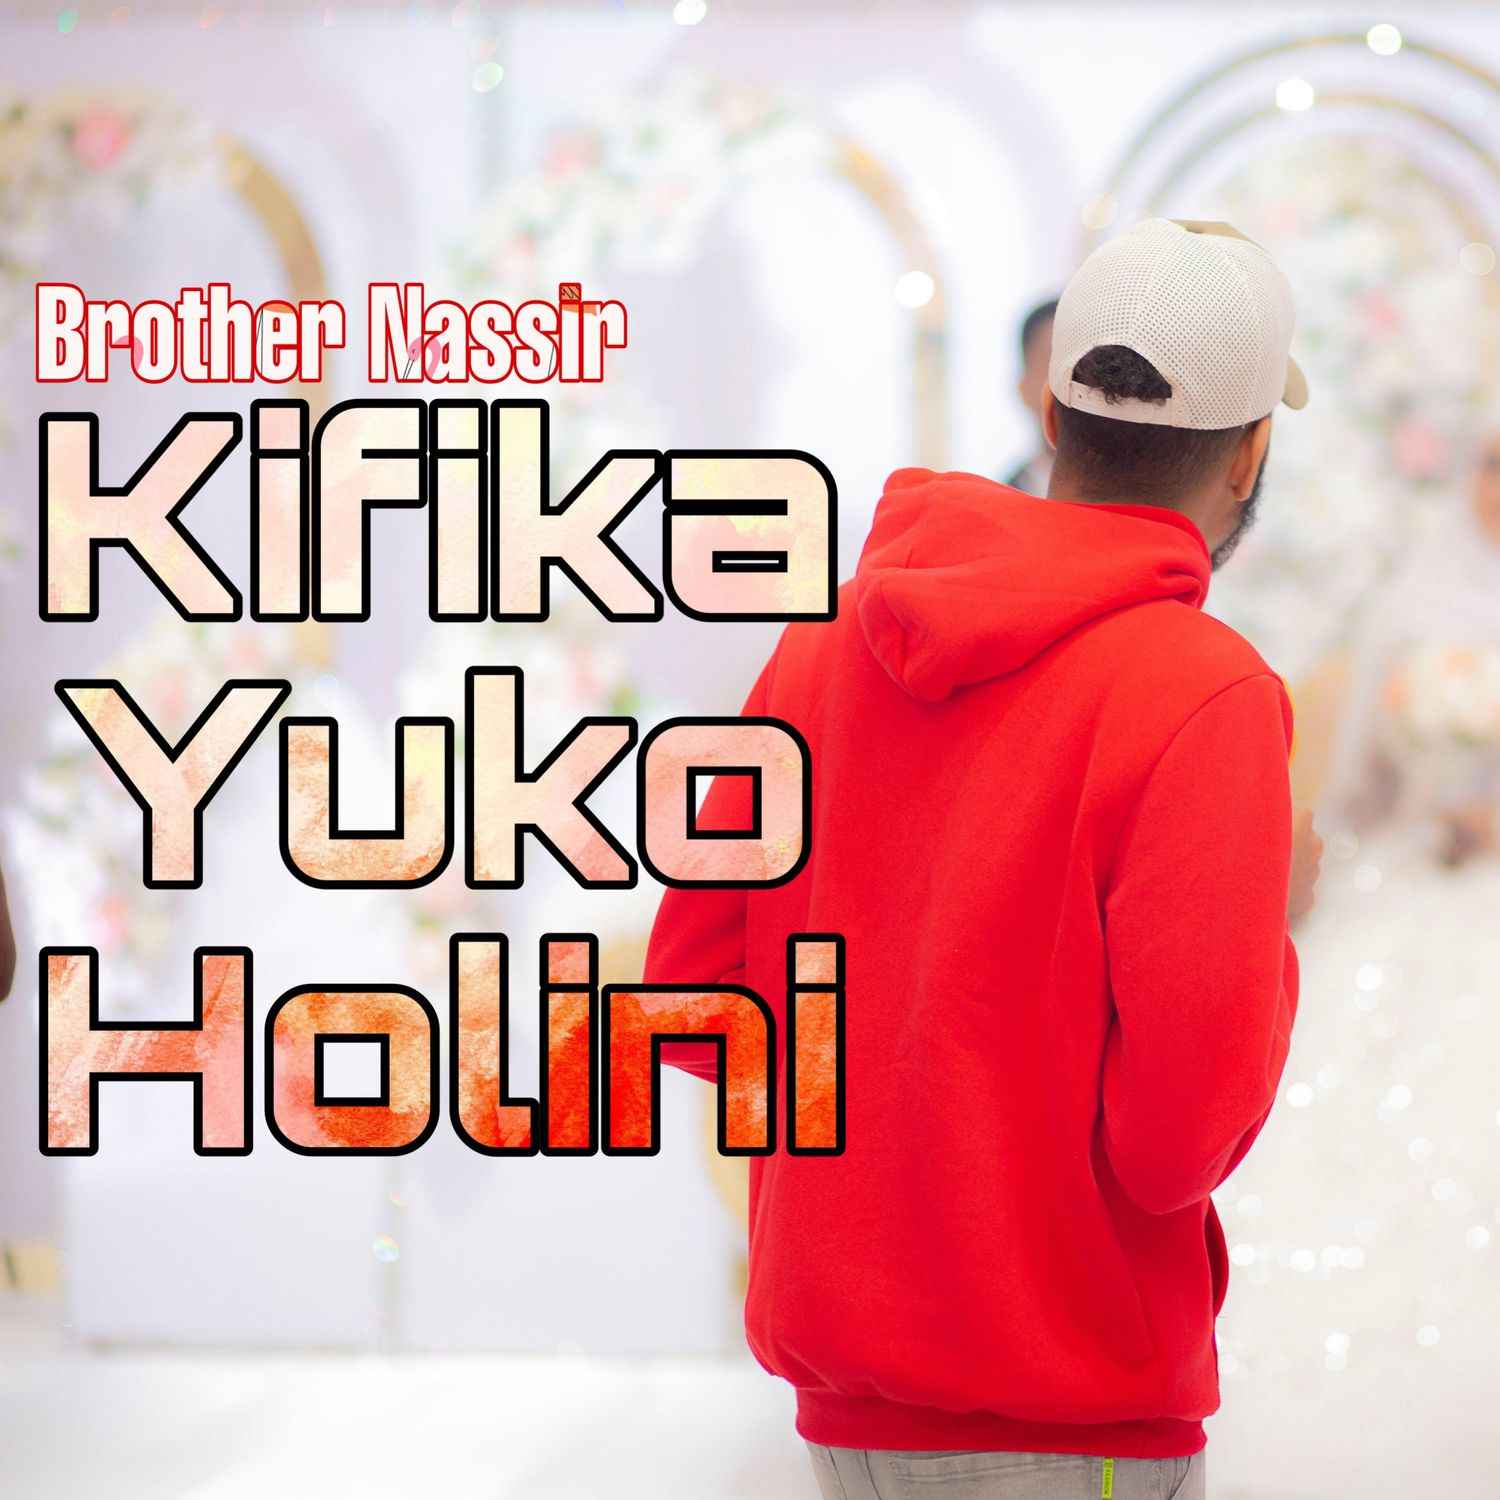 Brother Nassir - Kifika Yuko Holini Mp3 Download